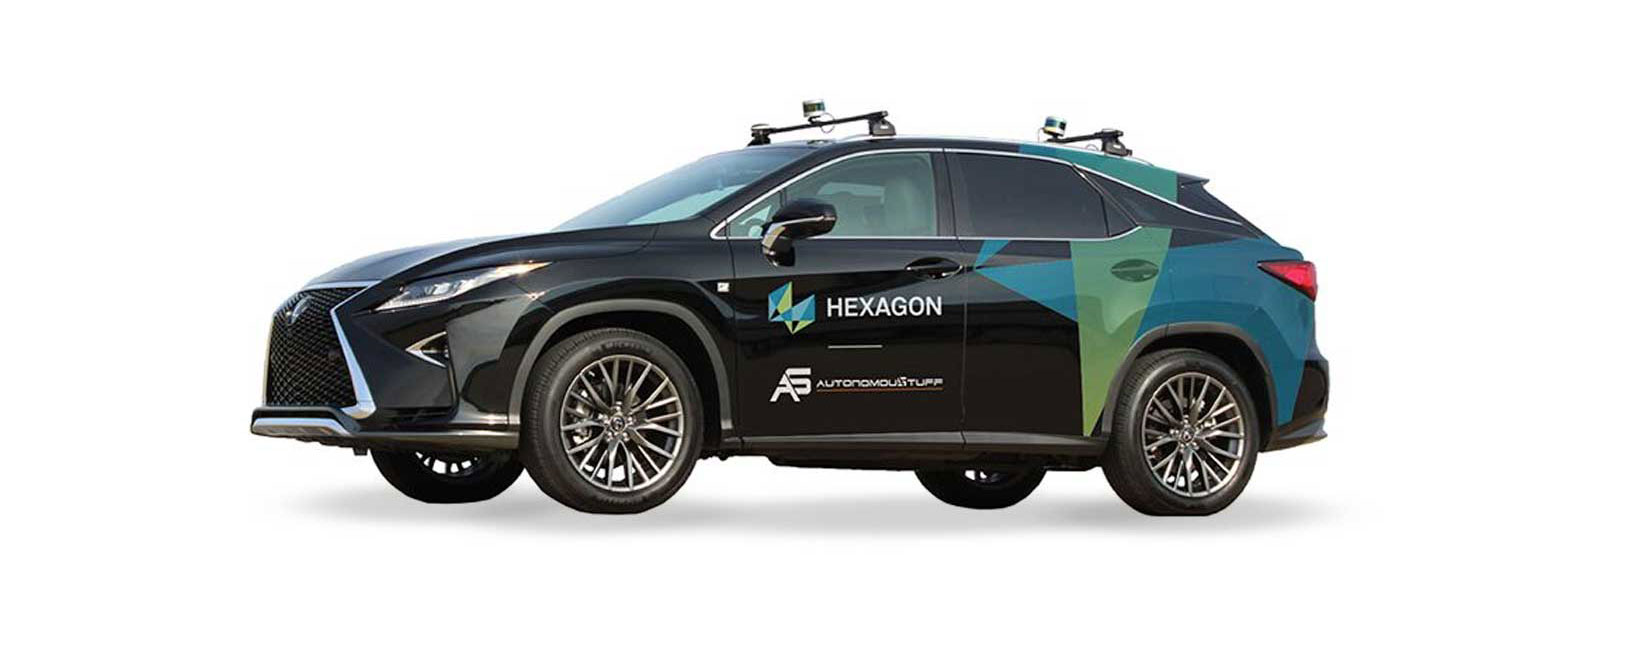 Vista di un veicolo a marchio Hexagon con funzionalità "drive by wire"